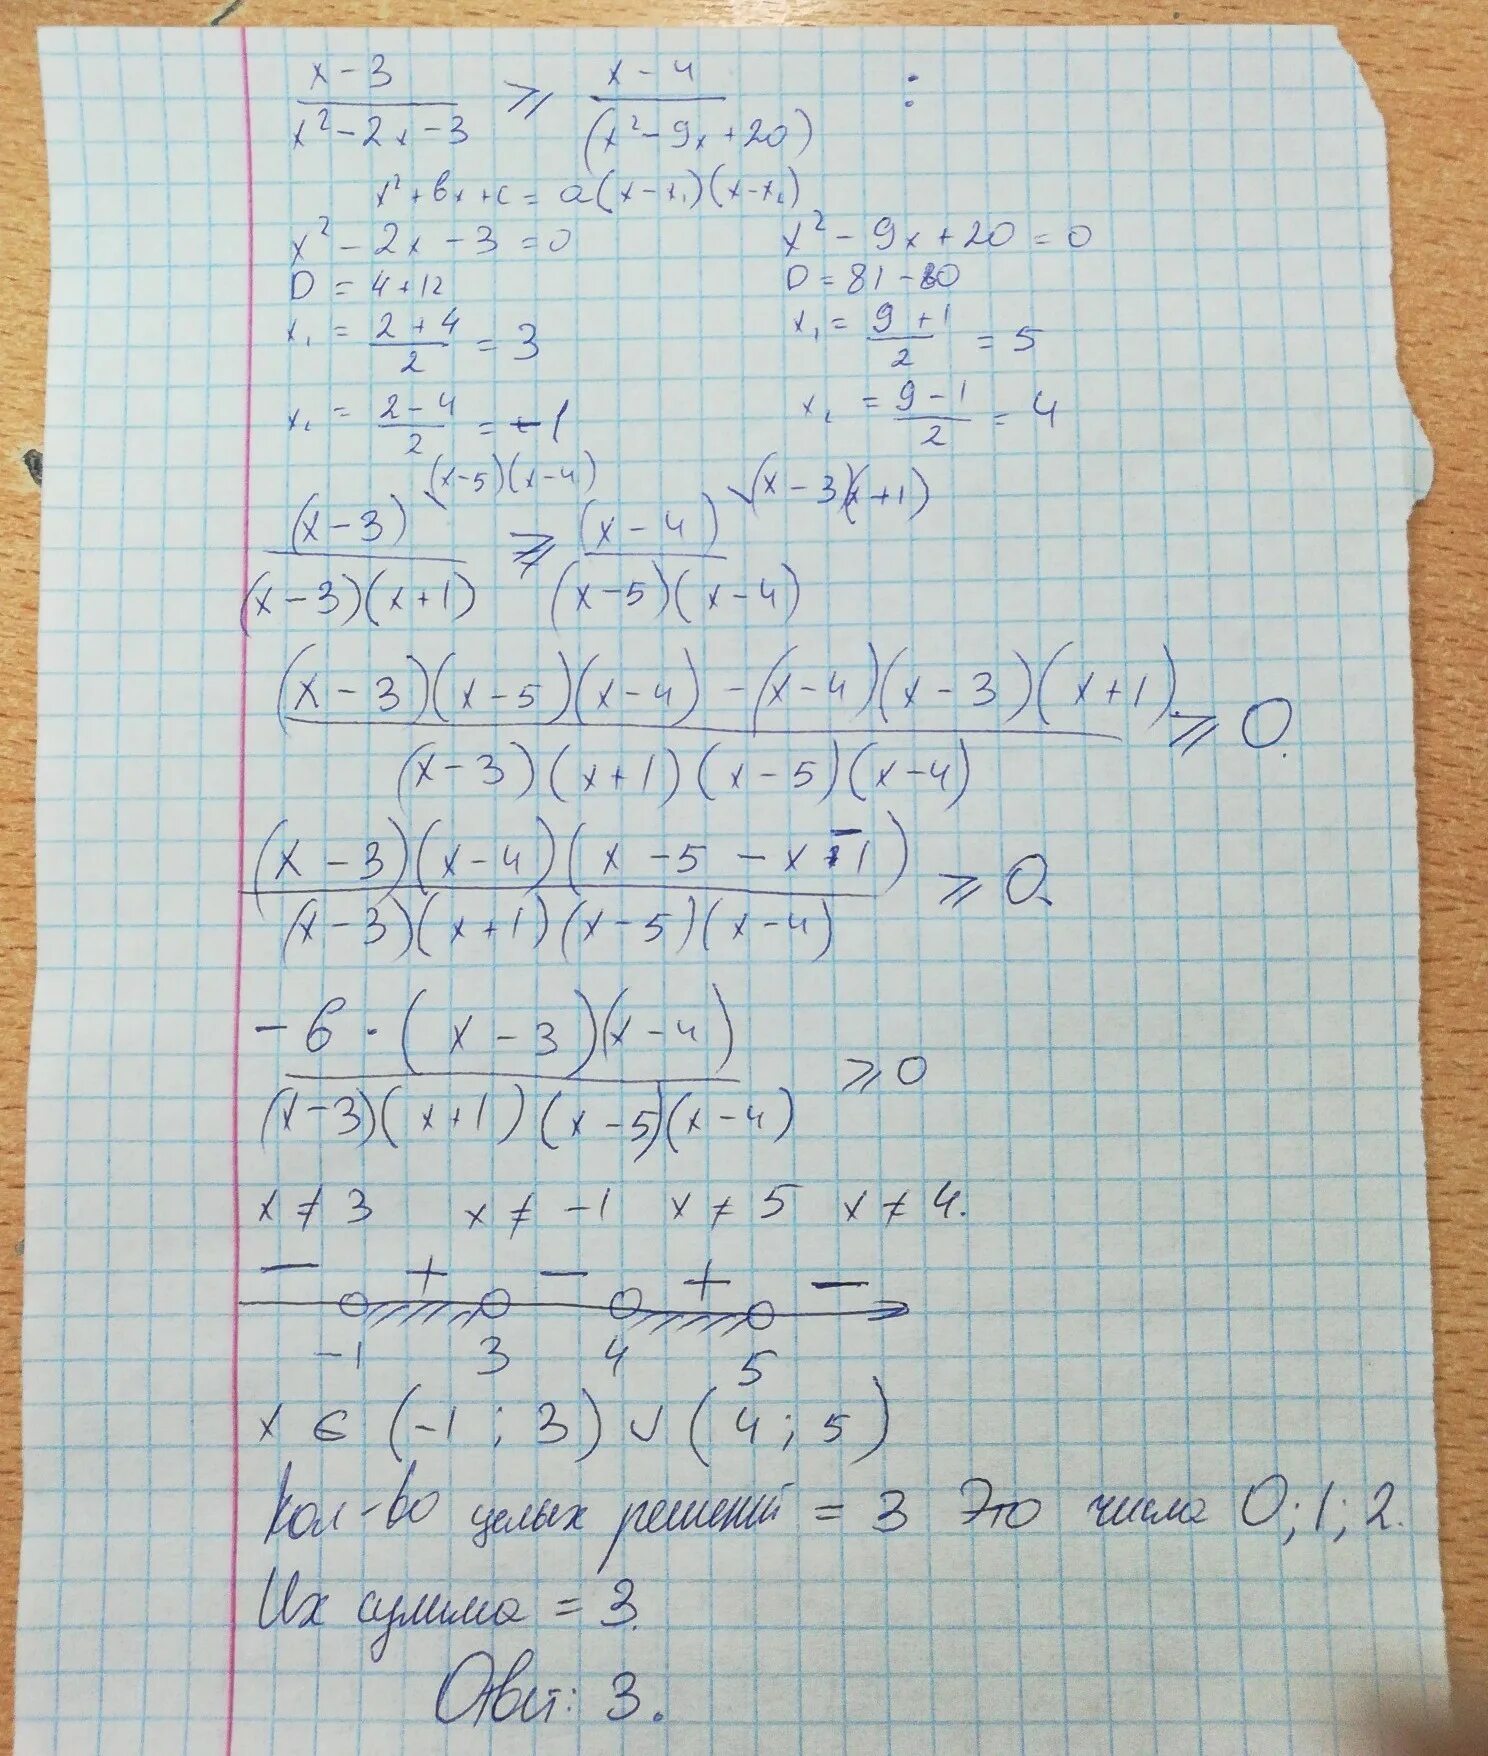 X2 19 10. (X+1)4(X+2)3(X+3)2(X+4)≤0. -3x+2 11-4(2x-2) вариант 1. Вариант 1 3+y=x-3 x^2+(y+6)^2=9. Б) 4х2+4x-3<0.